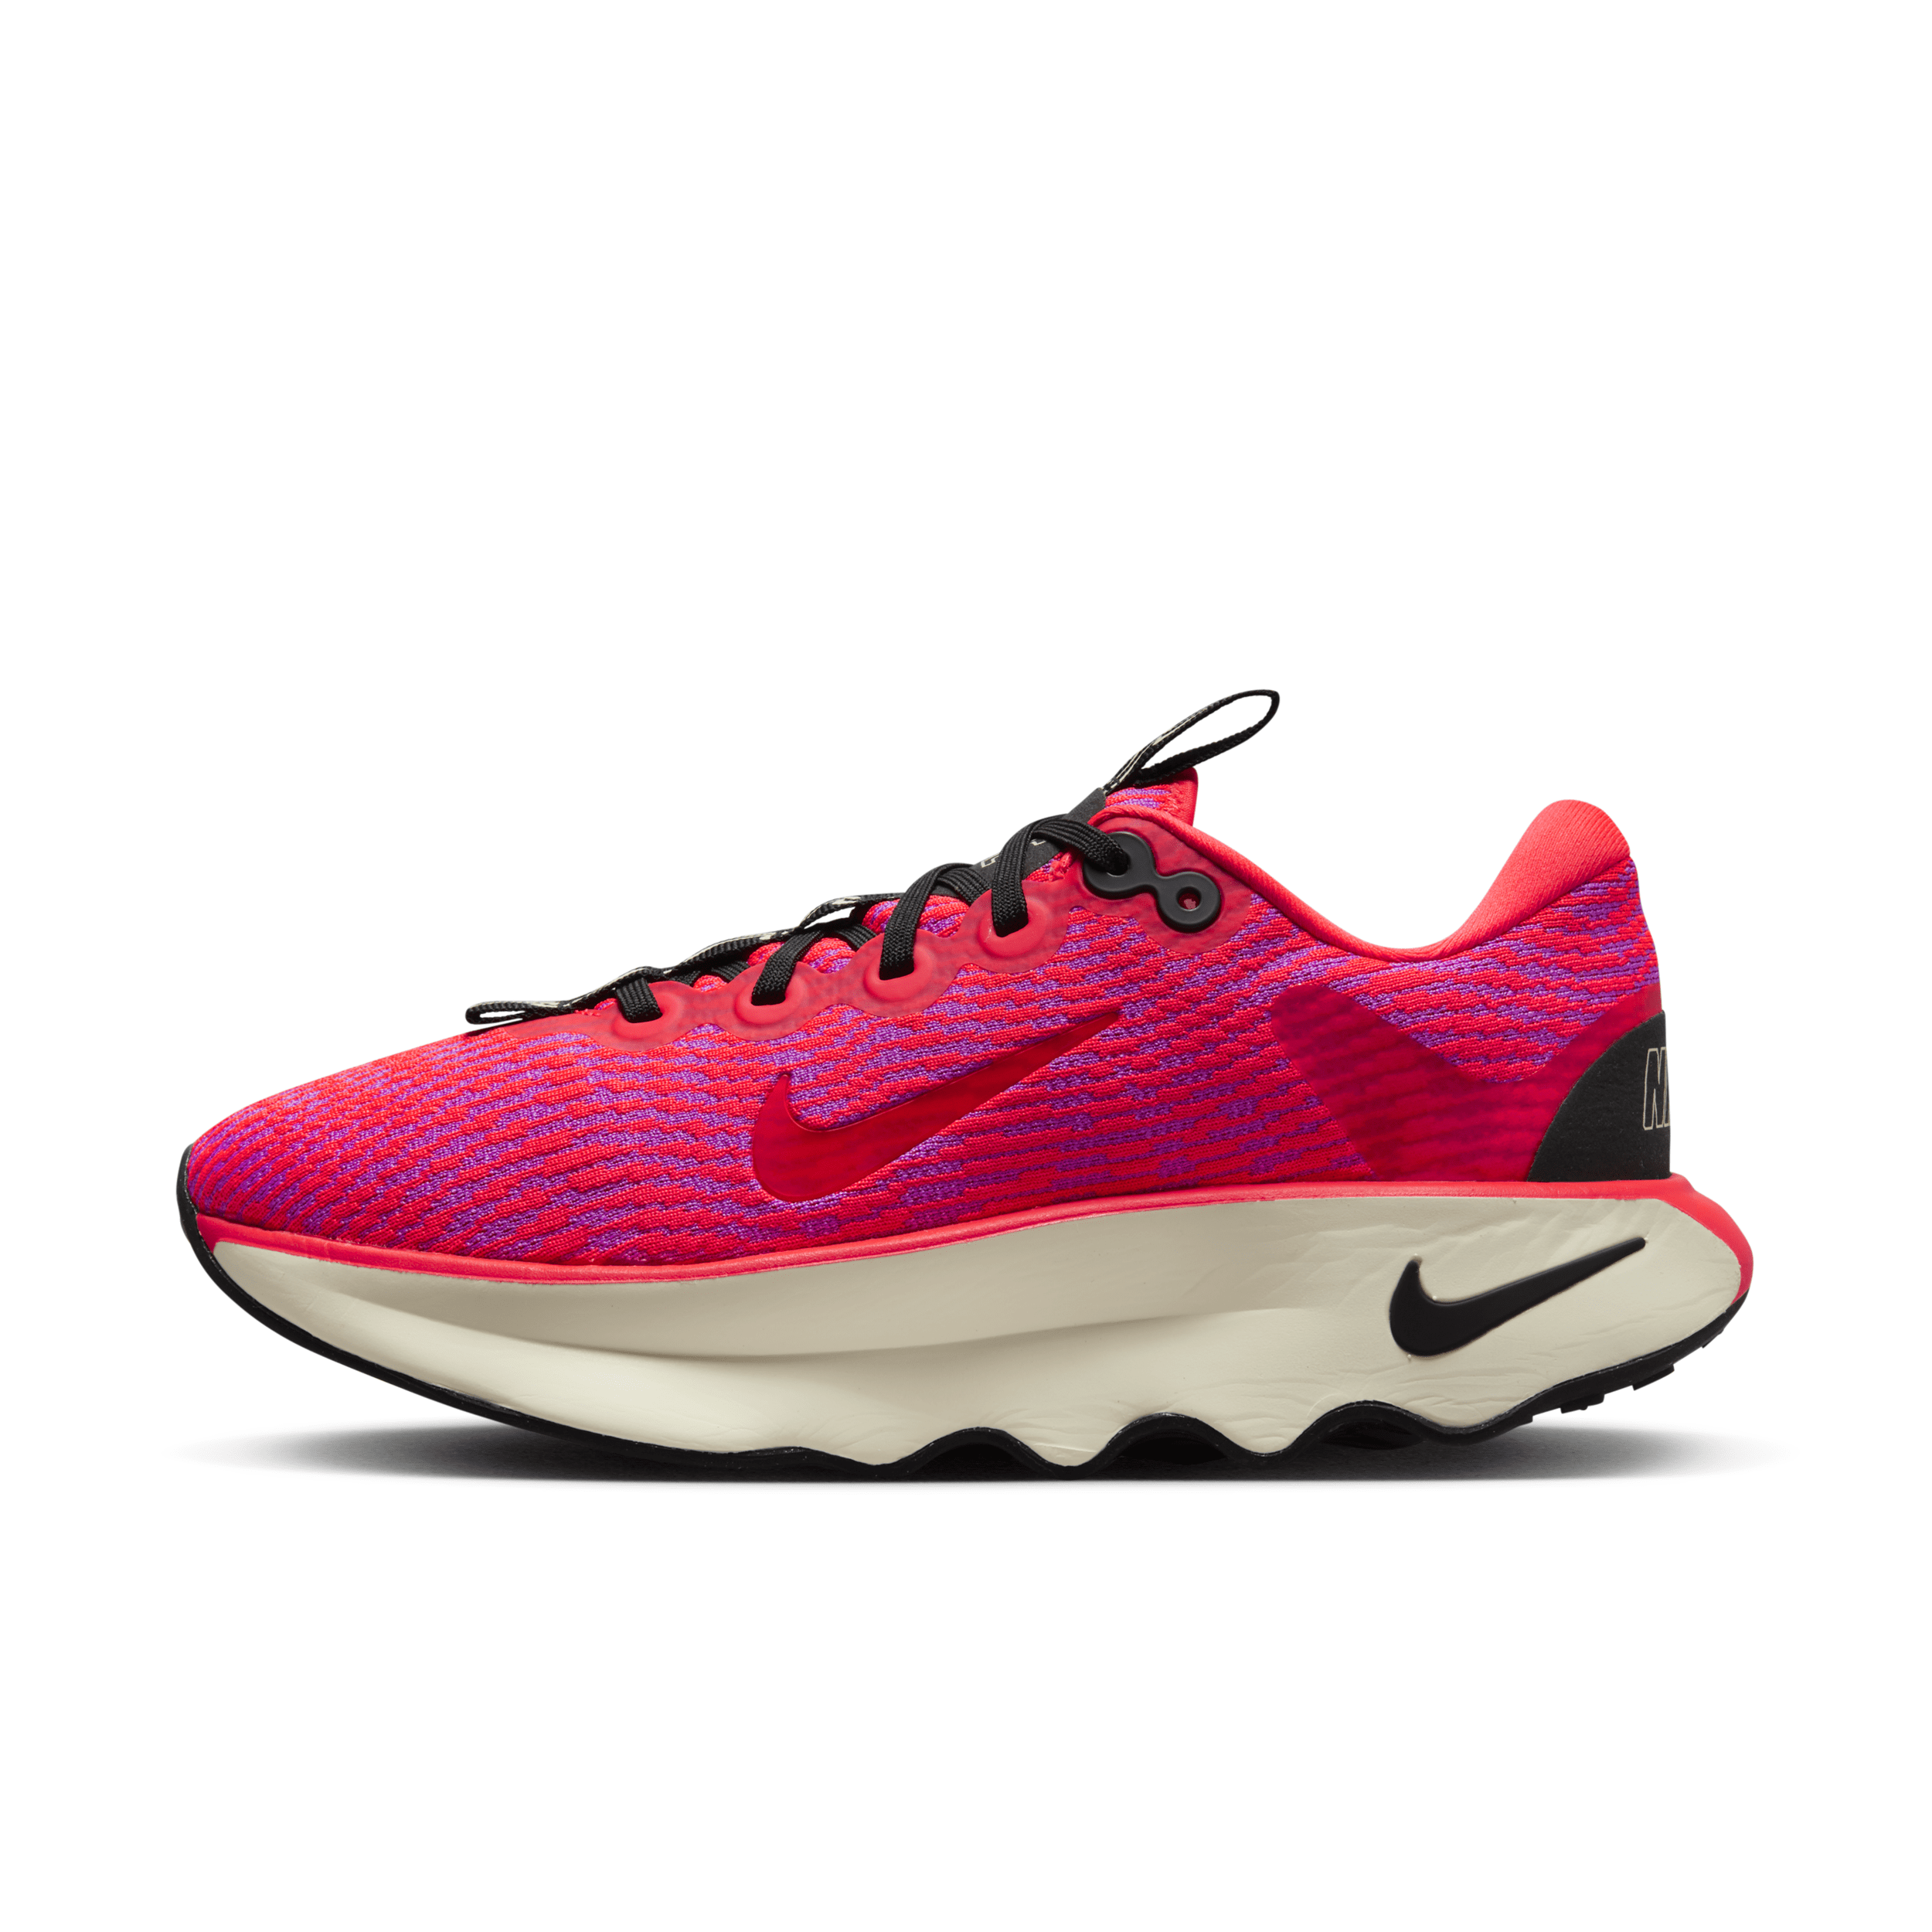 Nike Women's Motiva Walking Shoes In Red